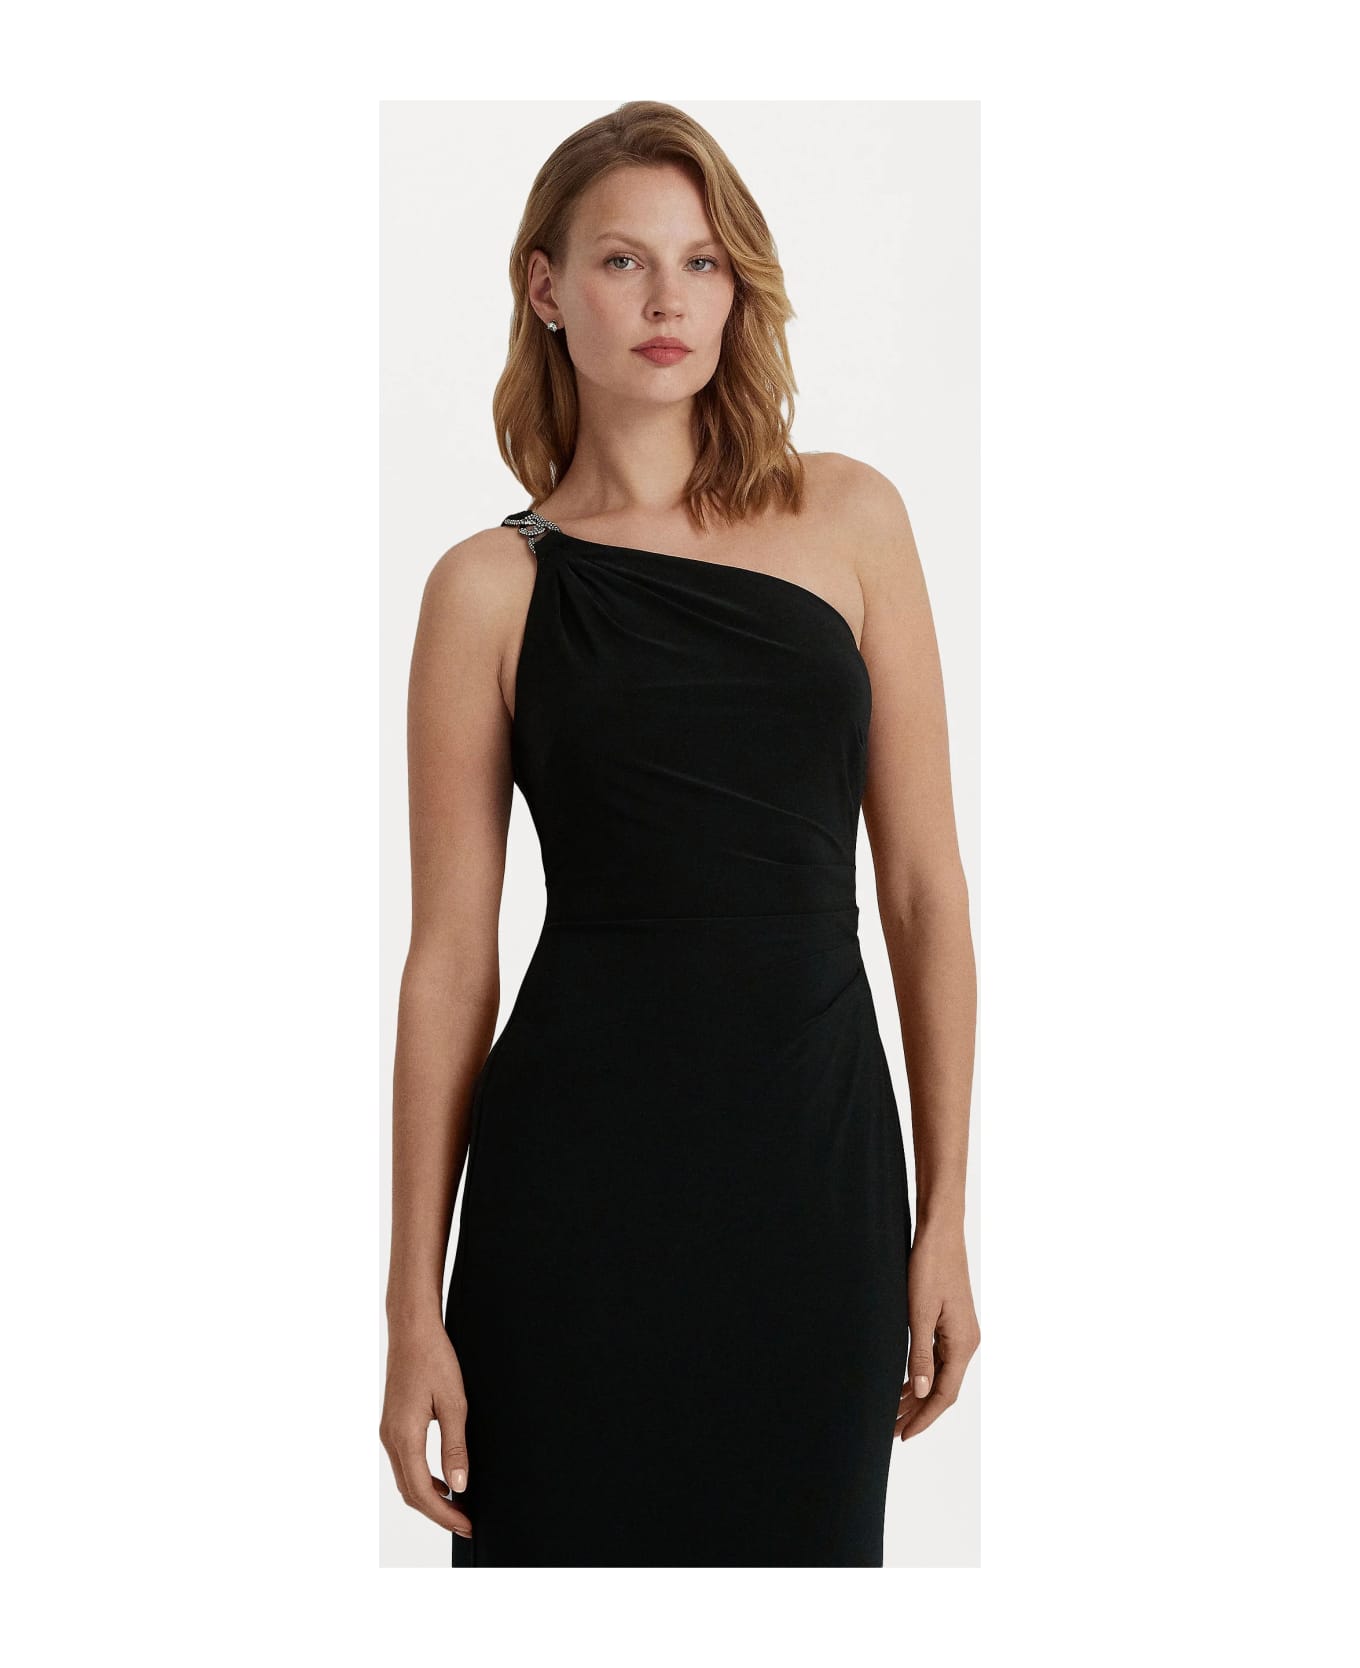 Ralph Lauren Belina One Shoulder Evening Dress - Black